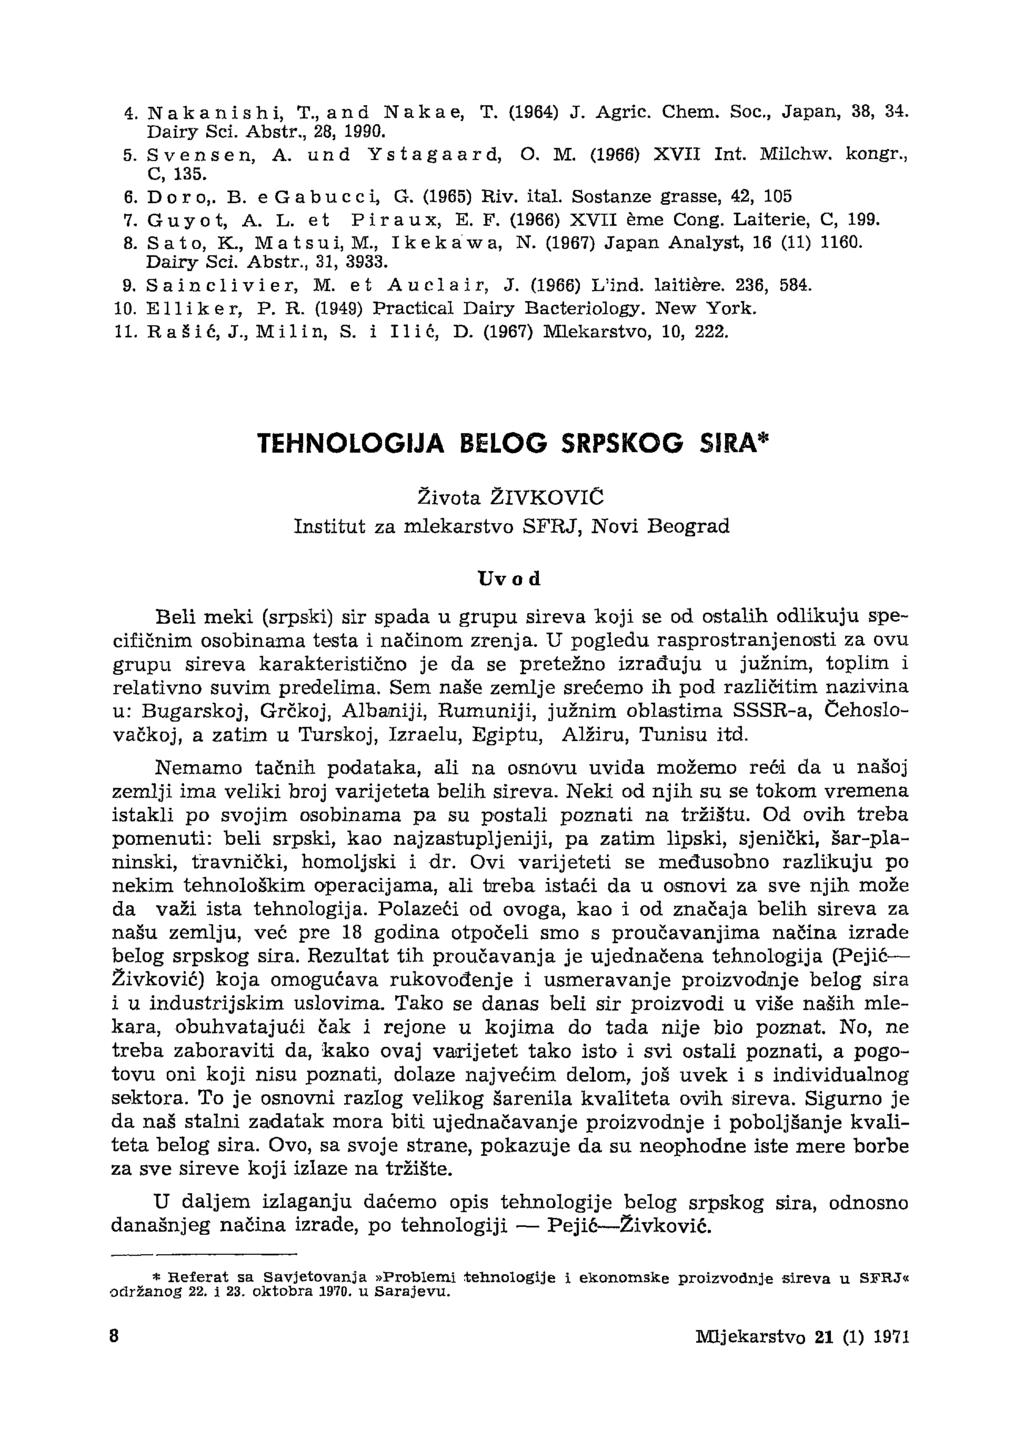 4. Nakanishi, T,and N a k a e, T. (1964) J. Agric. Chem. Soc, Japan, 38, 34. Dairy Sci. Abstr., 28, 1990. 5. Svens en, A. und Ystagaard, O. M. (1966) XVII Int. Milchw. kongr., C, 135. 6. D o r o,. B.